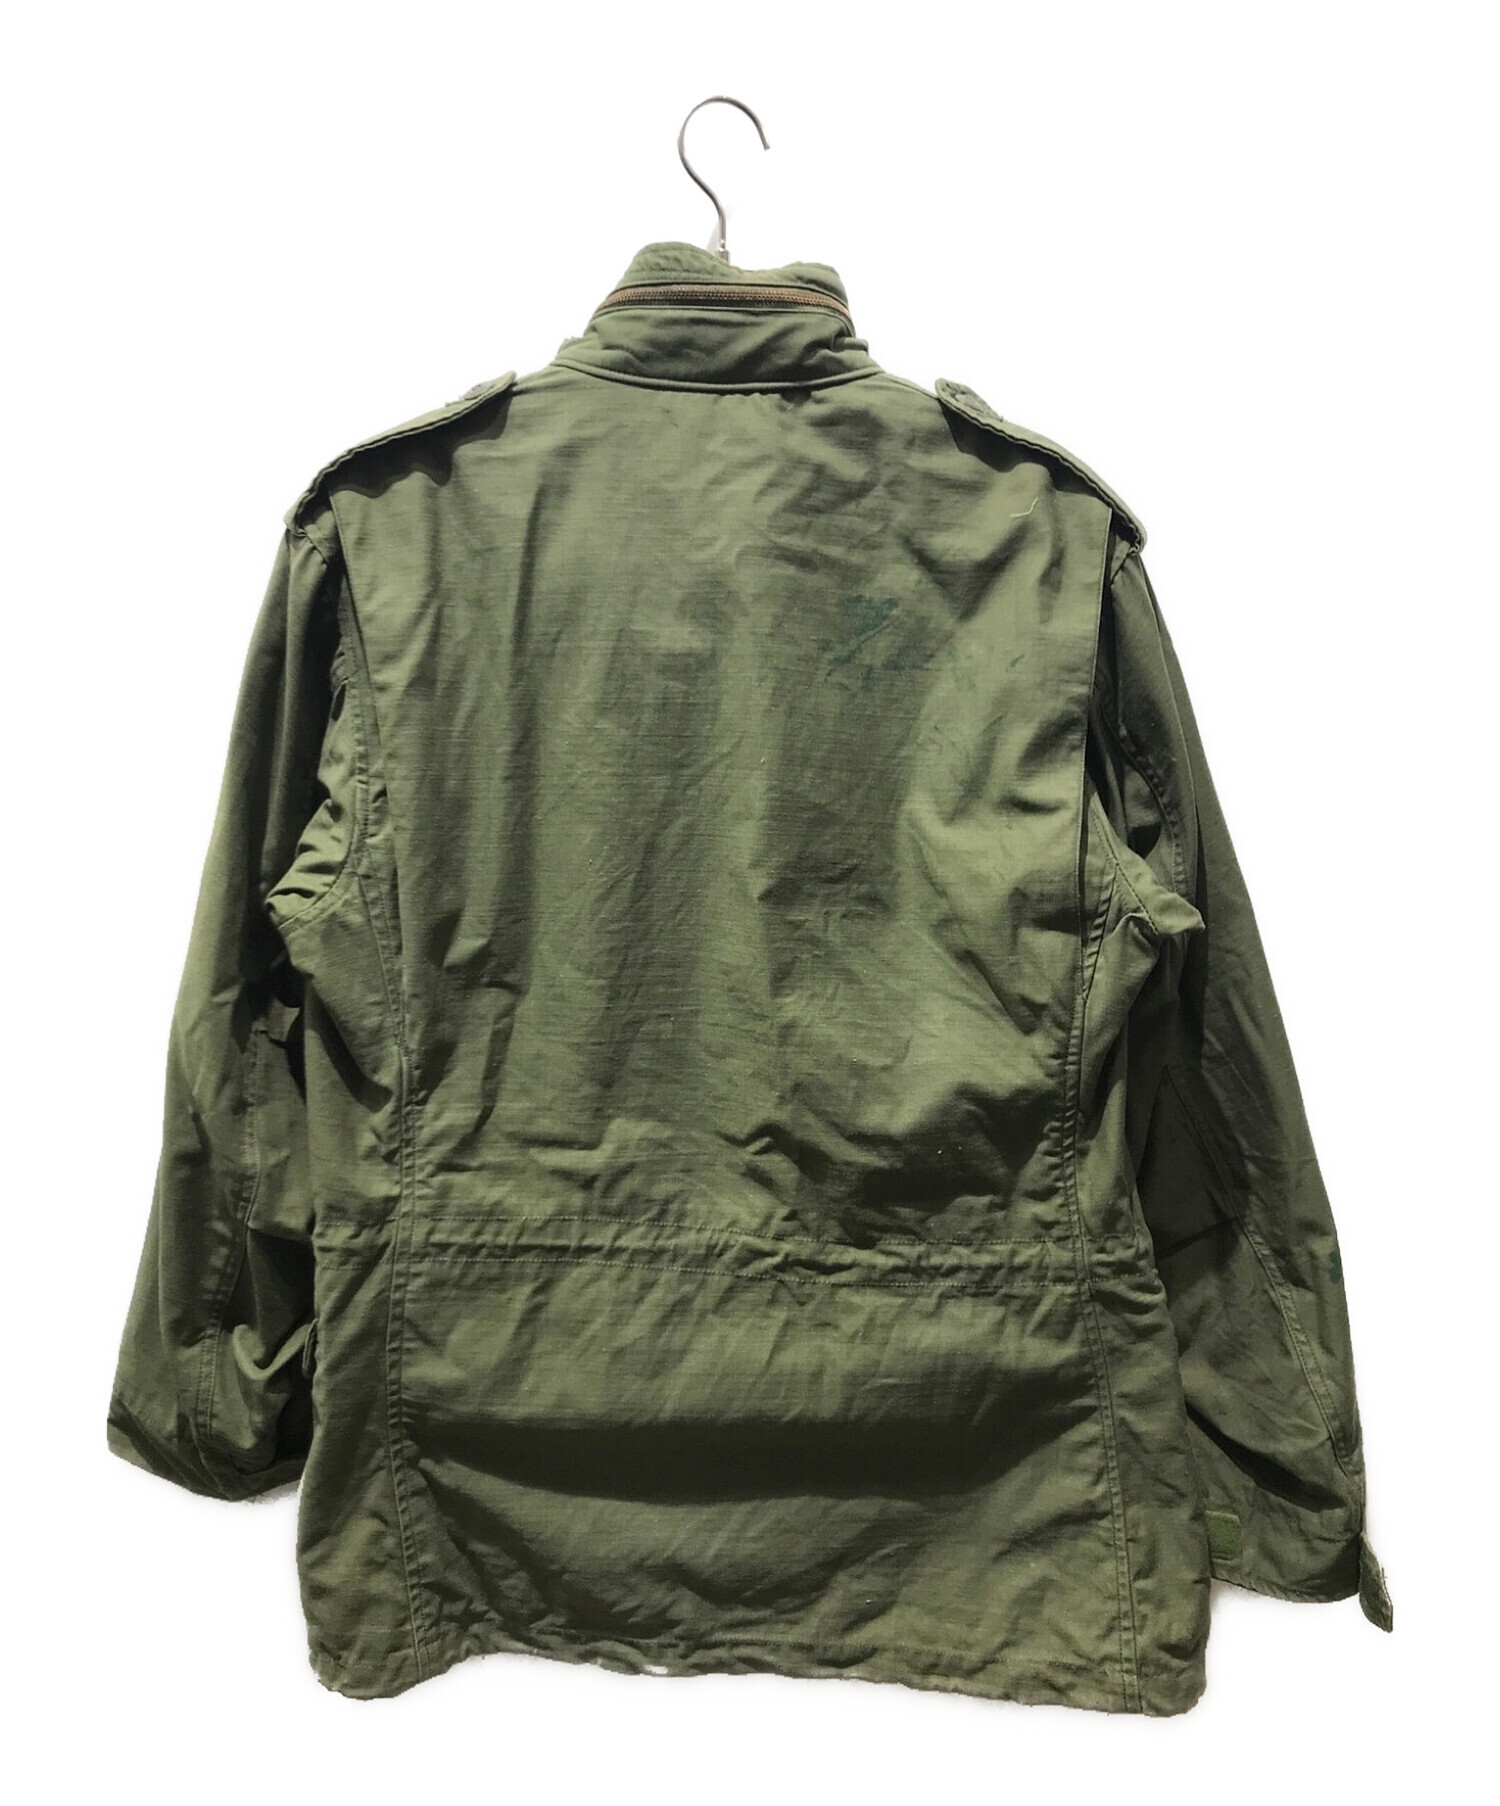 中古・古着通販】US ARMY (ユーエスアーミー) M65ジャケット DLA100-79 